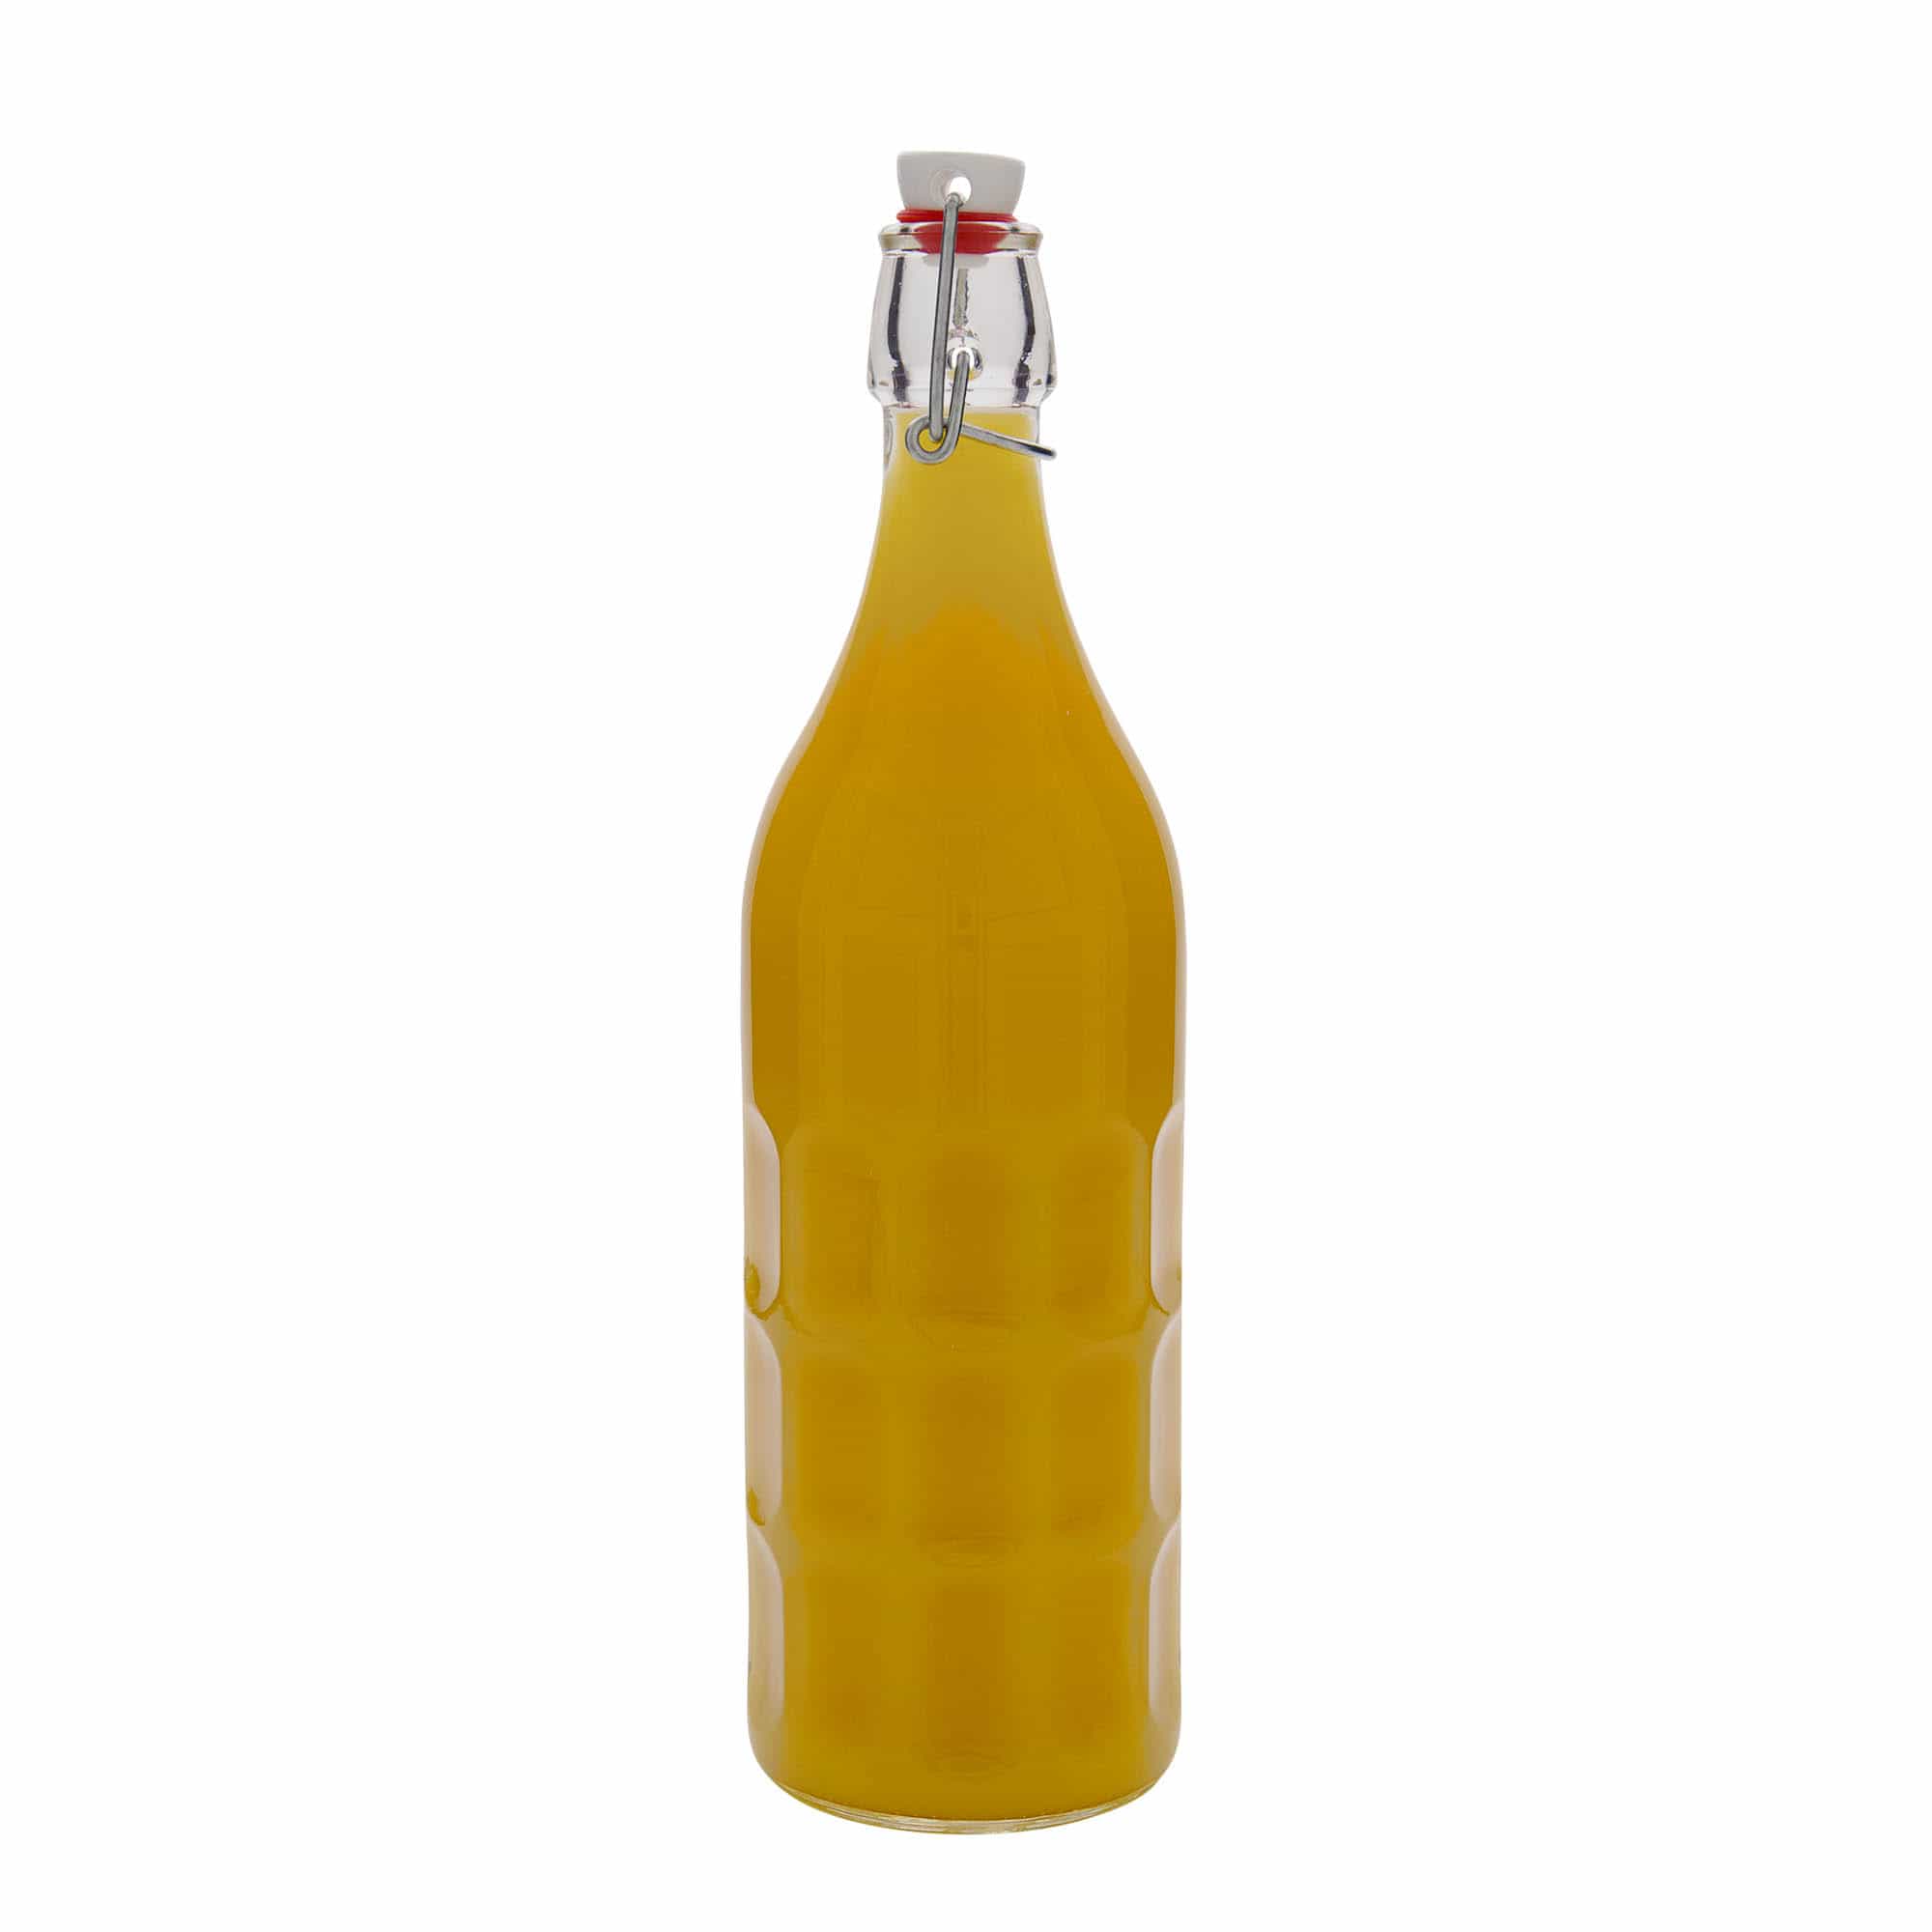 1000 ml-es üvegpalack Moresca, szájnyílás: csatos zár